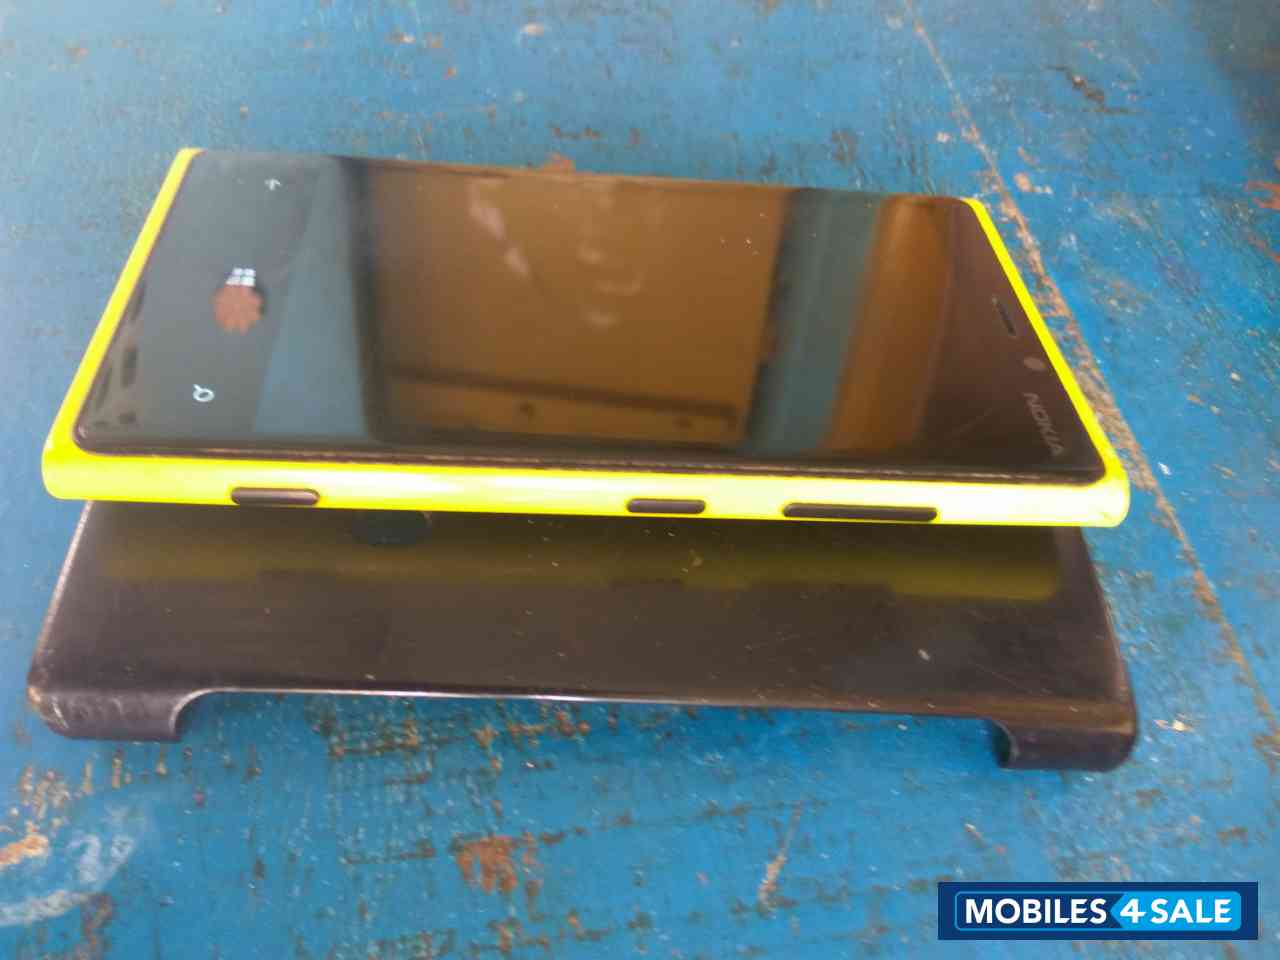 Yellow Nokia Lumia